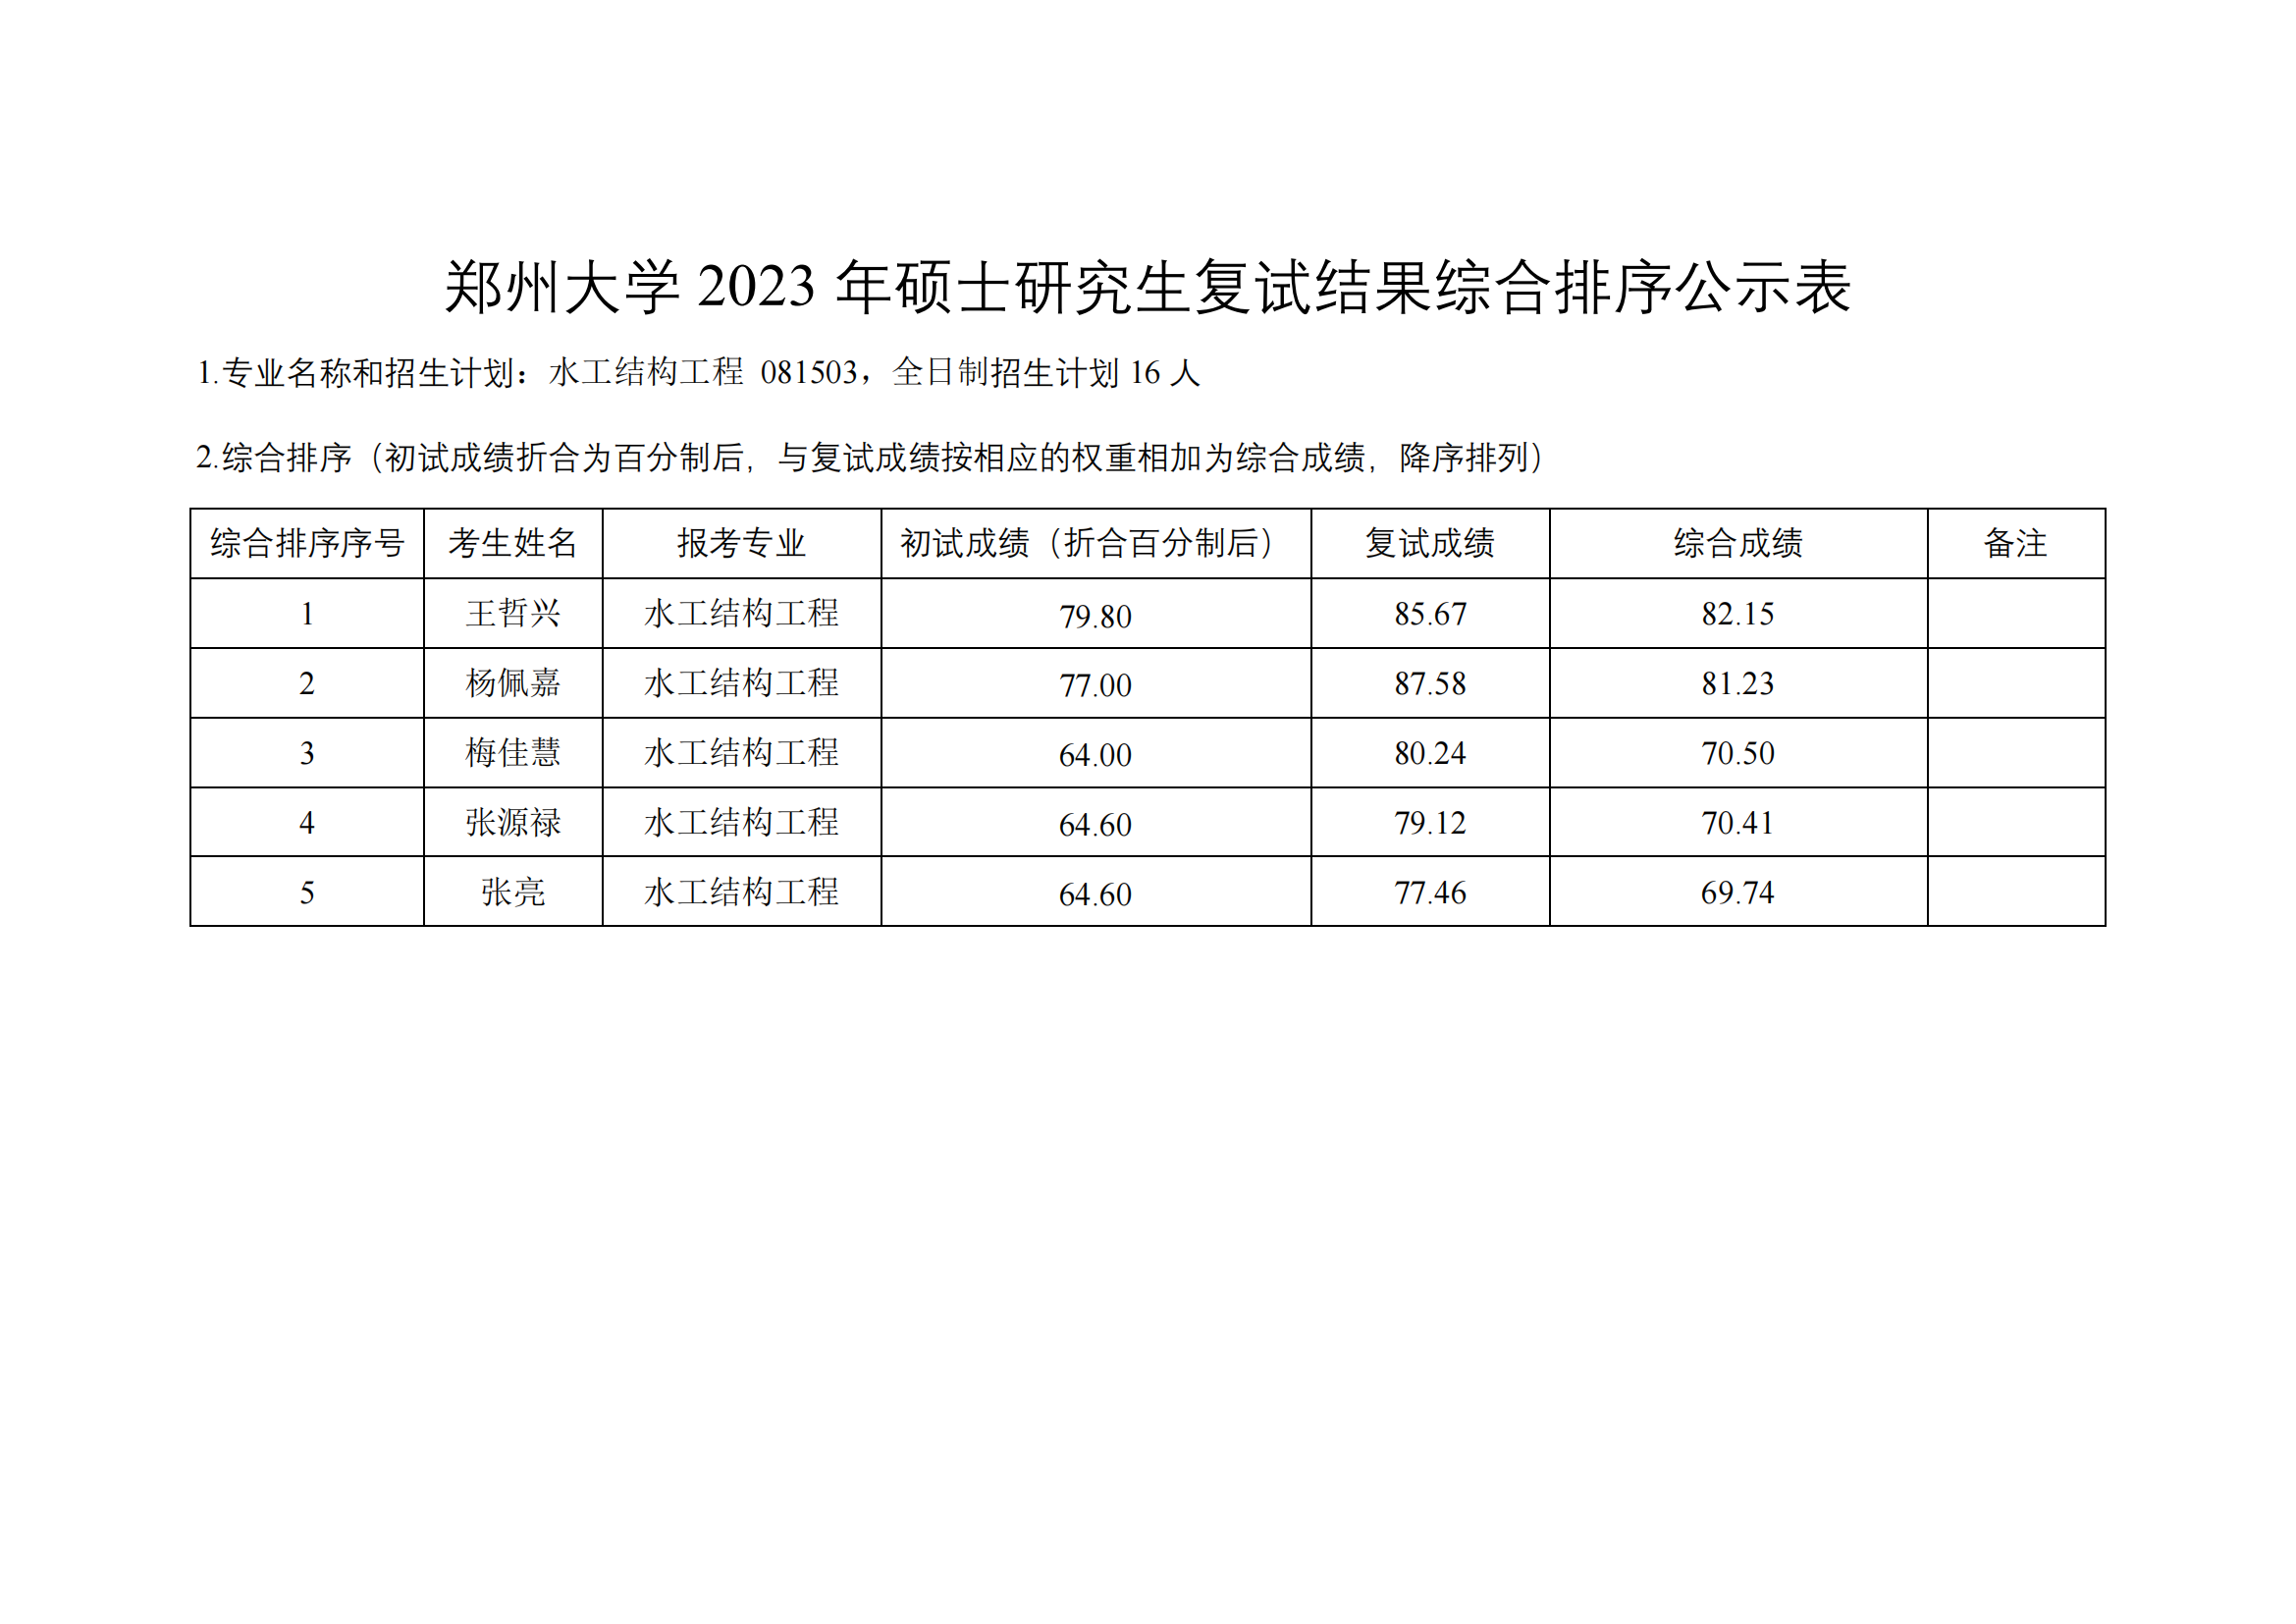 郑州大学水利与土木工程学院（原水利科学与工程学院专业方向）－2023年一志愿硕士研究生复试结果综合排序公示表-20230402(2)_05.png